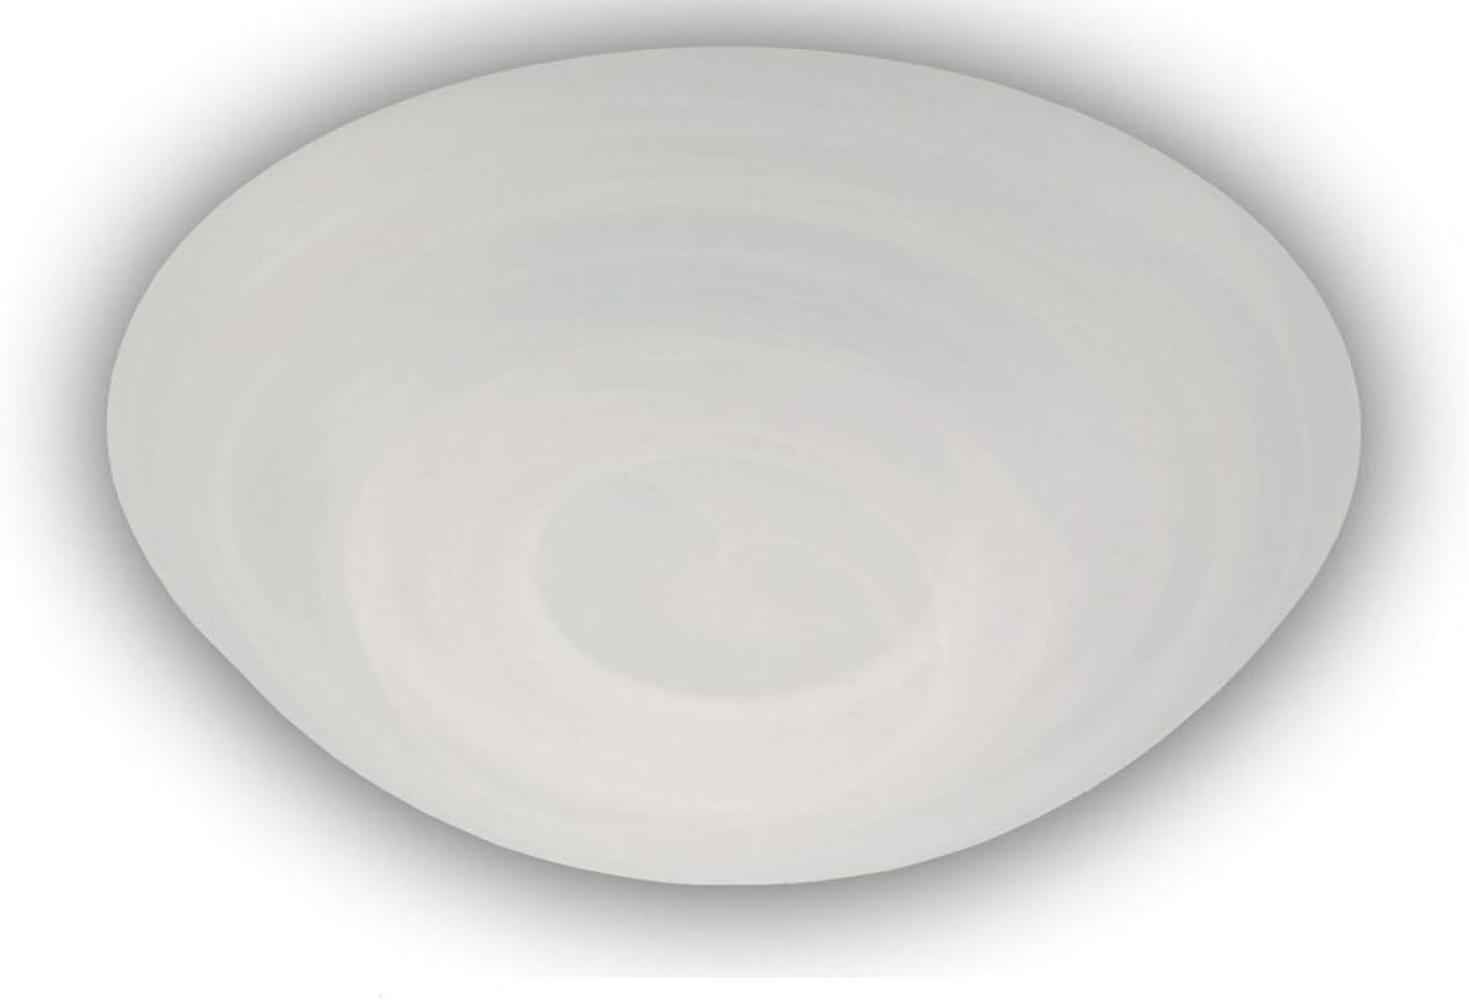 LED Deckenleuchte dimmbar, Deckenschale rund, Glas Alabaster, Ø 35cm Bild 1